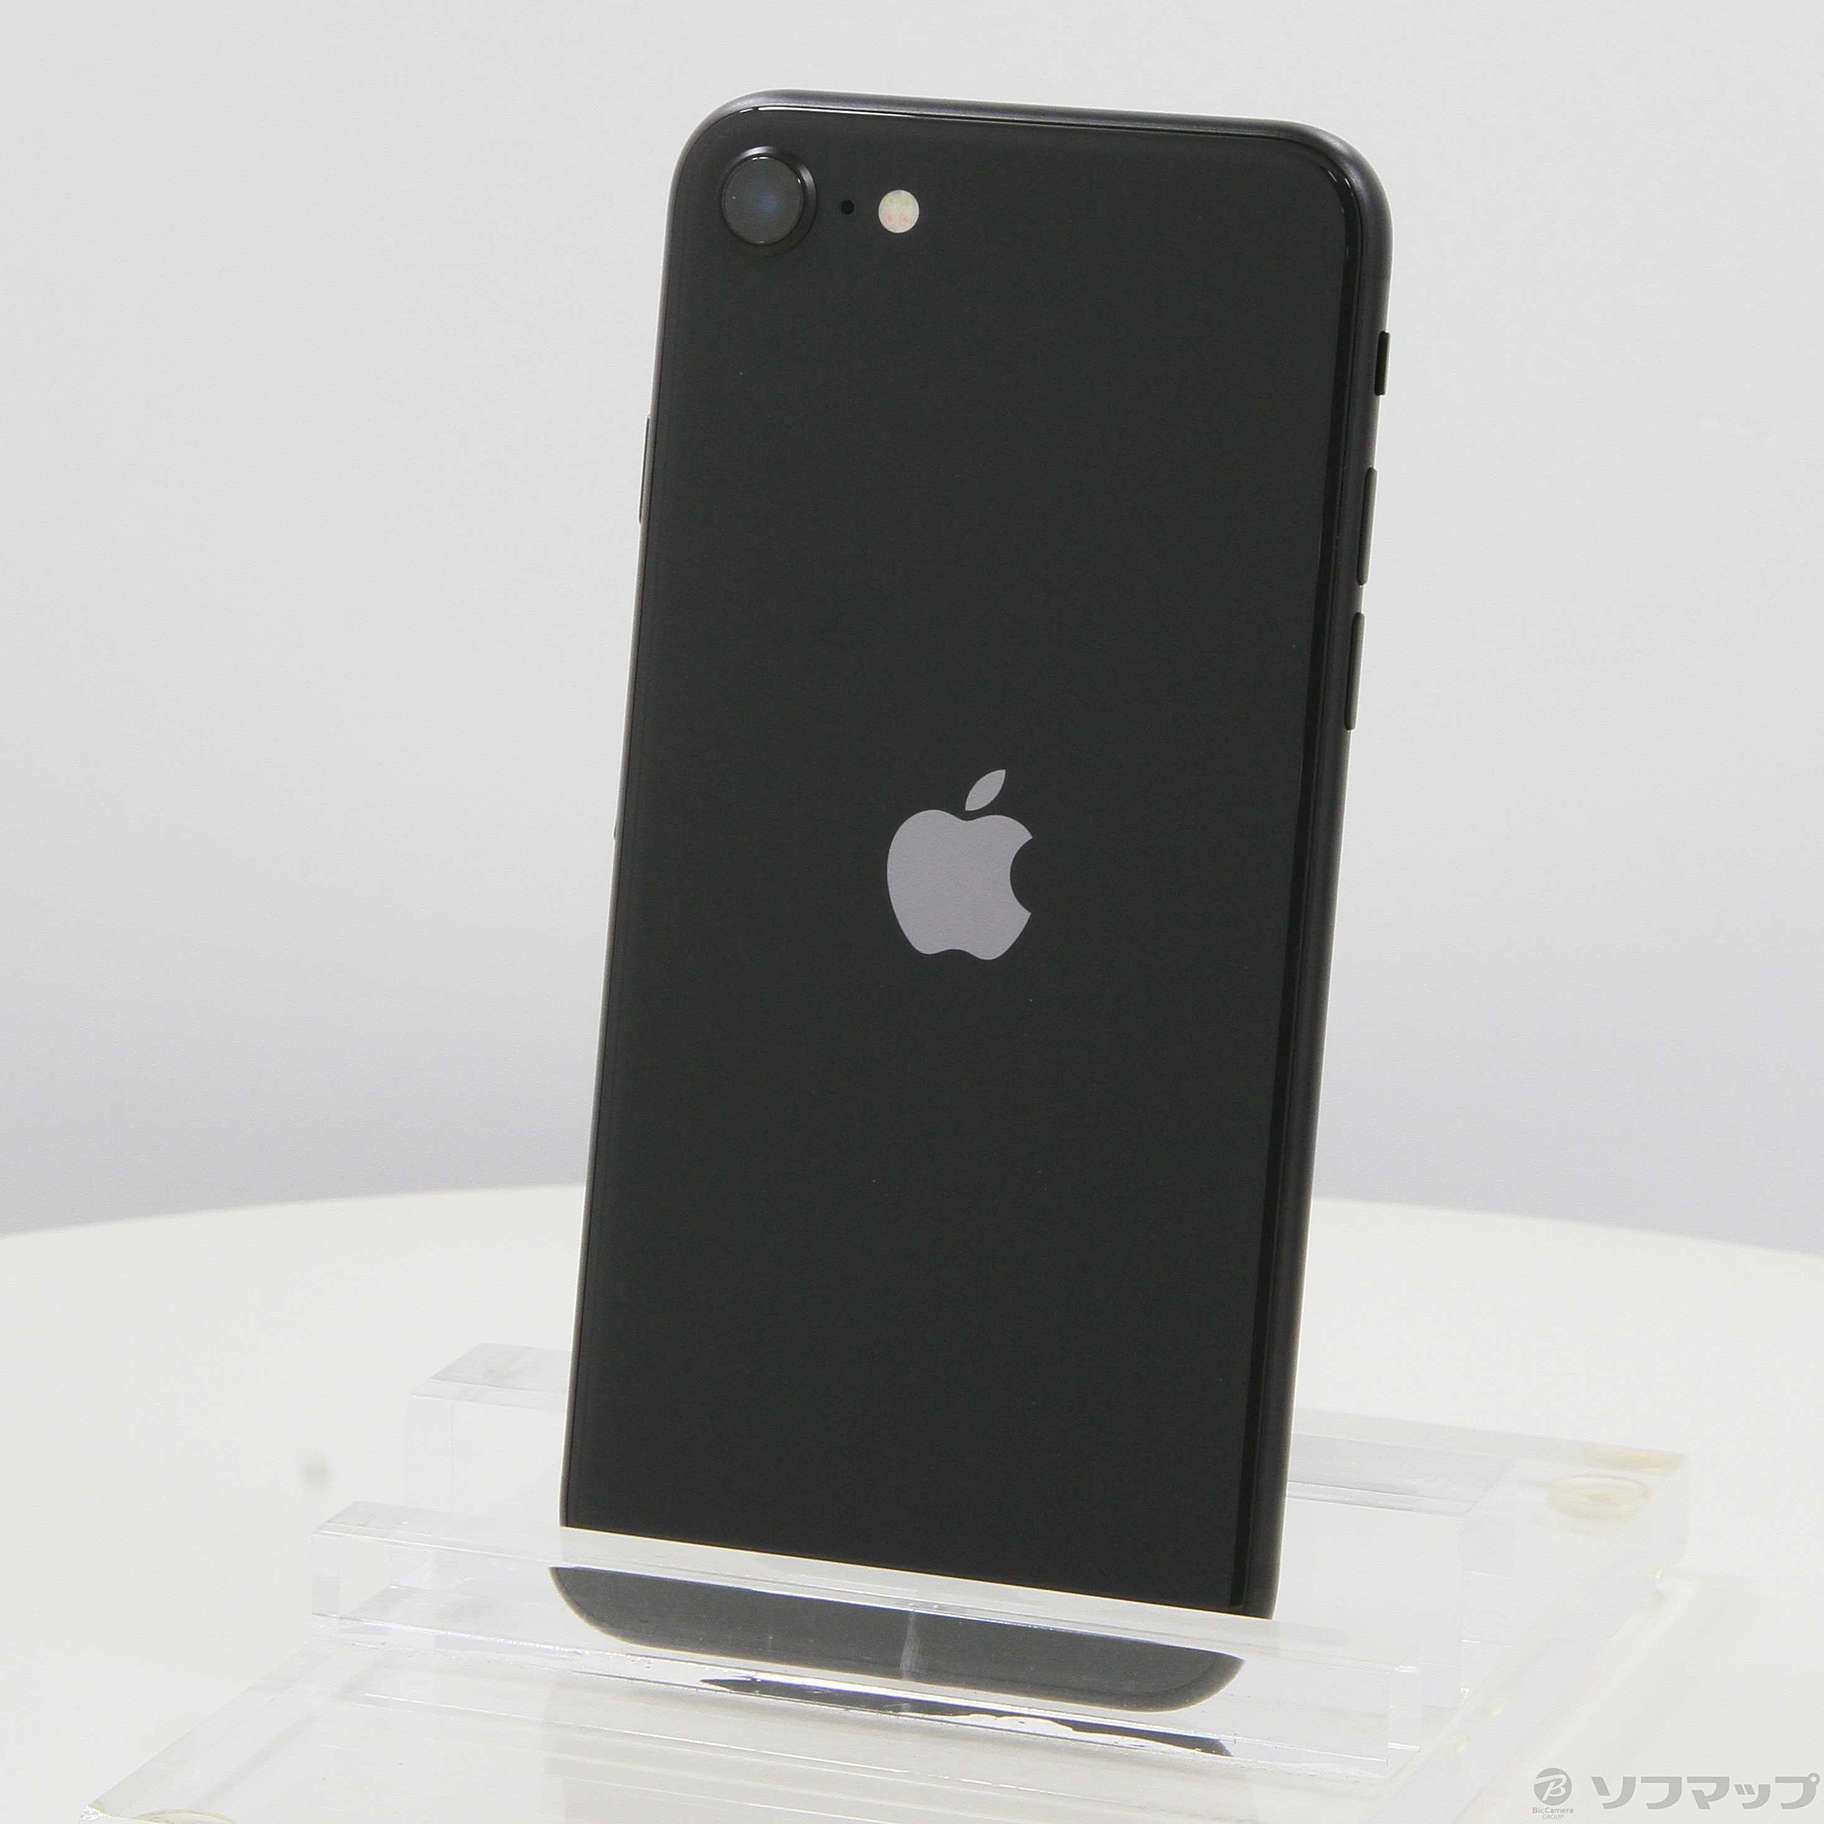 iPhone SE 第二世代 64GB ブラック simフリー